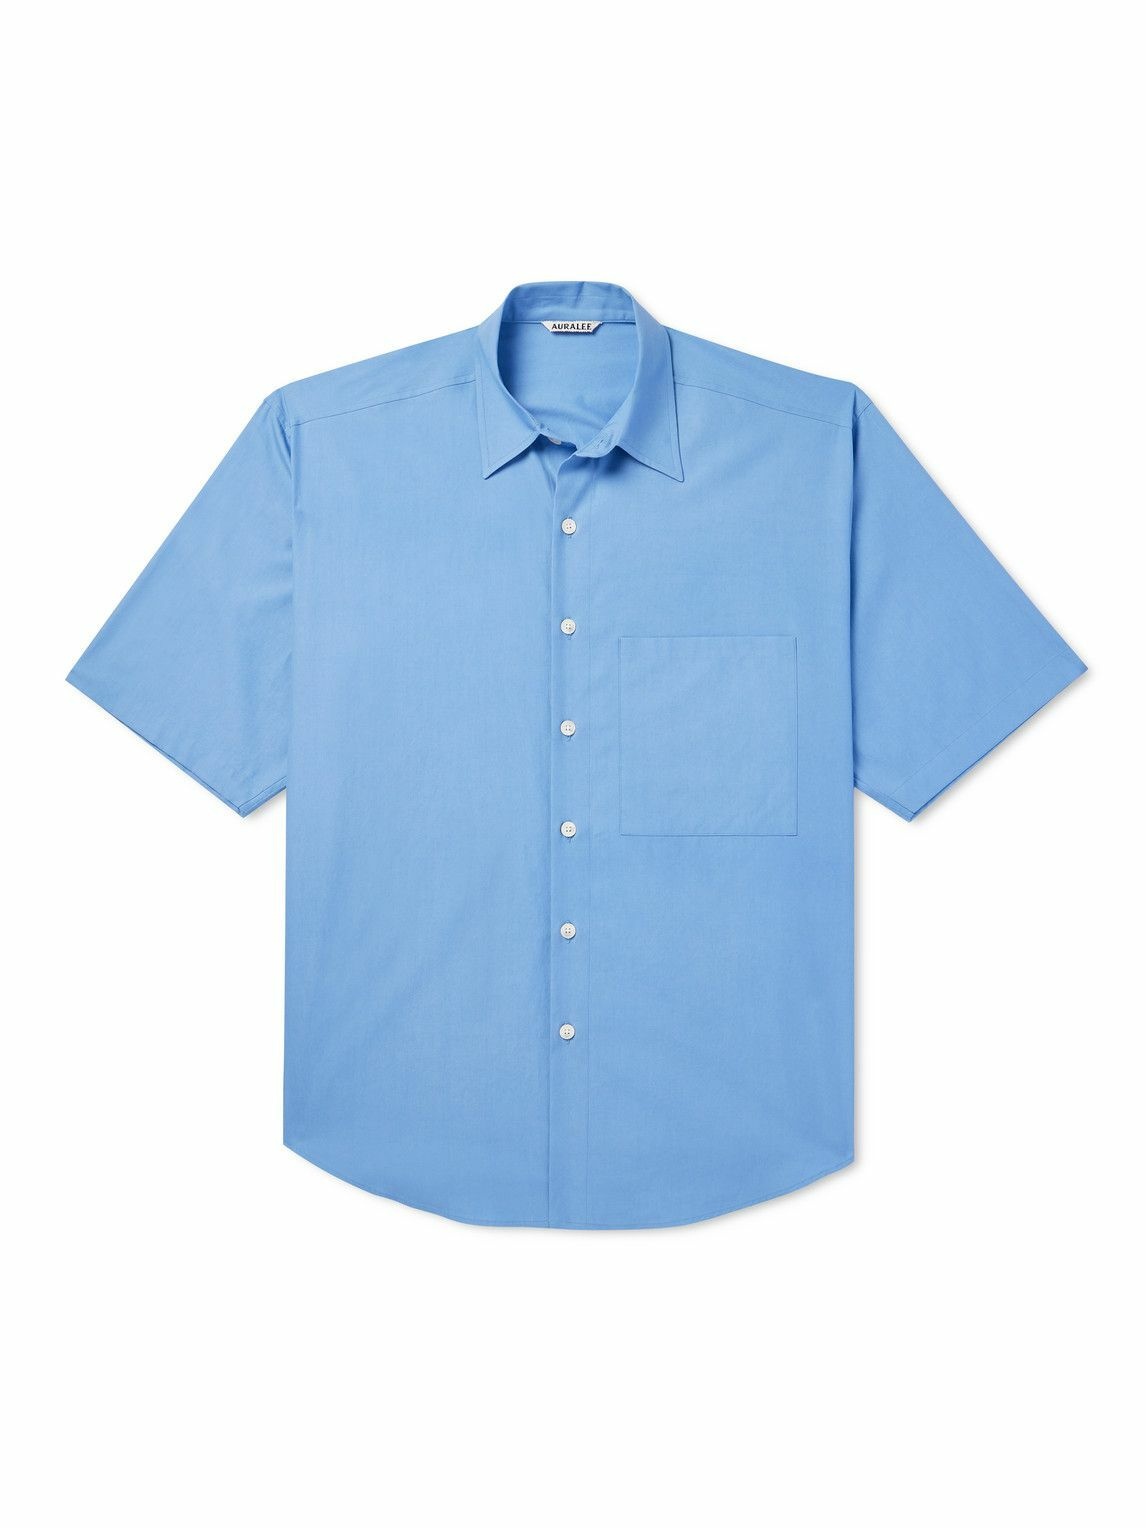 Auralee - Cotton-Poplin Shirt - Blue Auralee